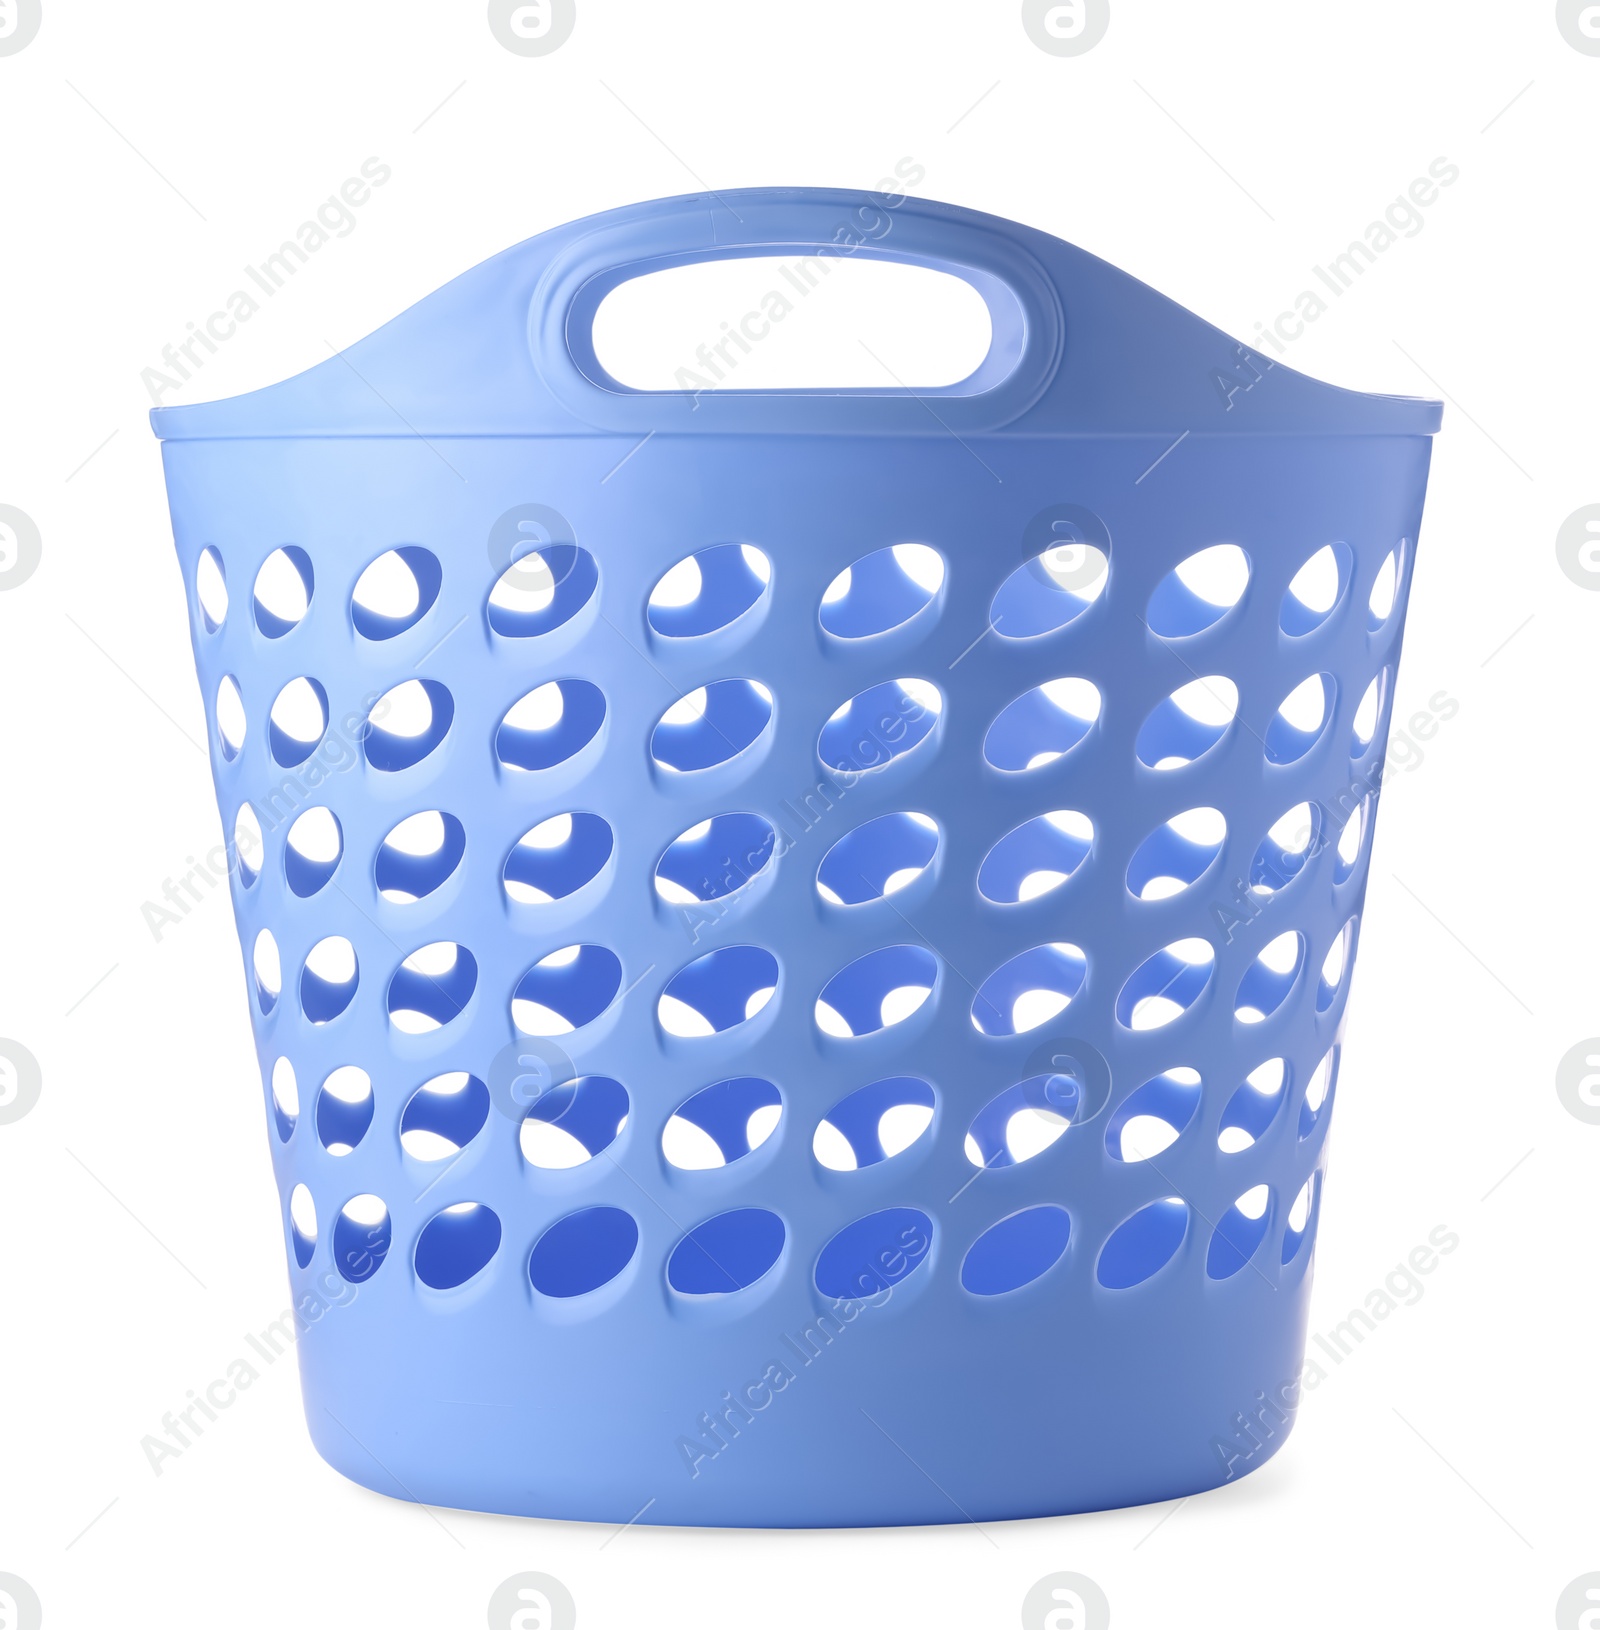 Photo of Blue empty laundry basket isolated on white